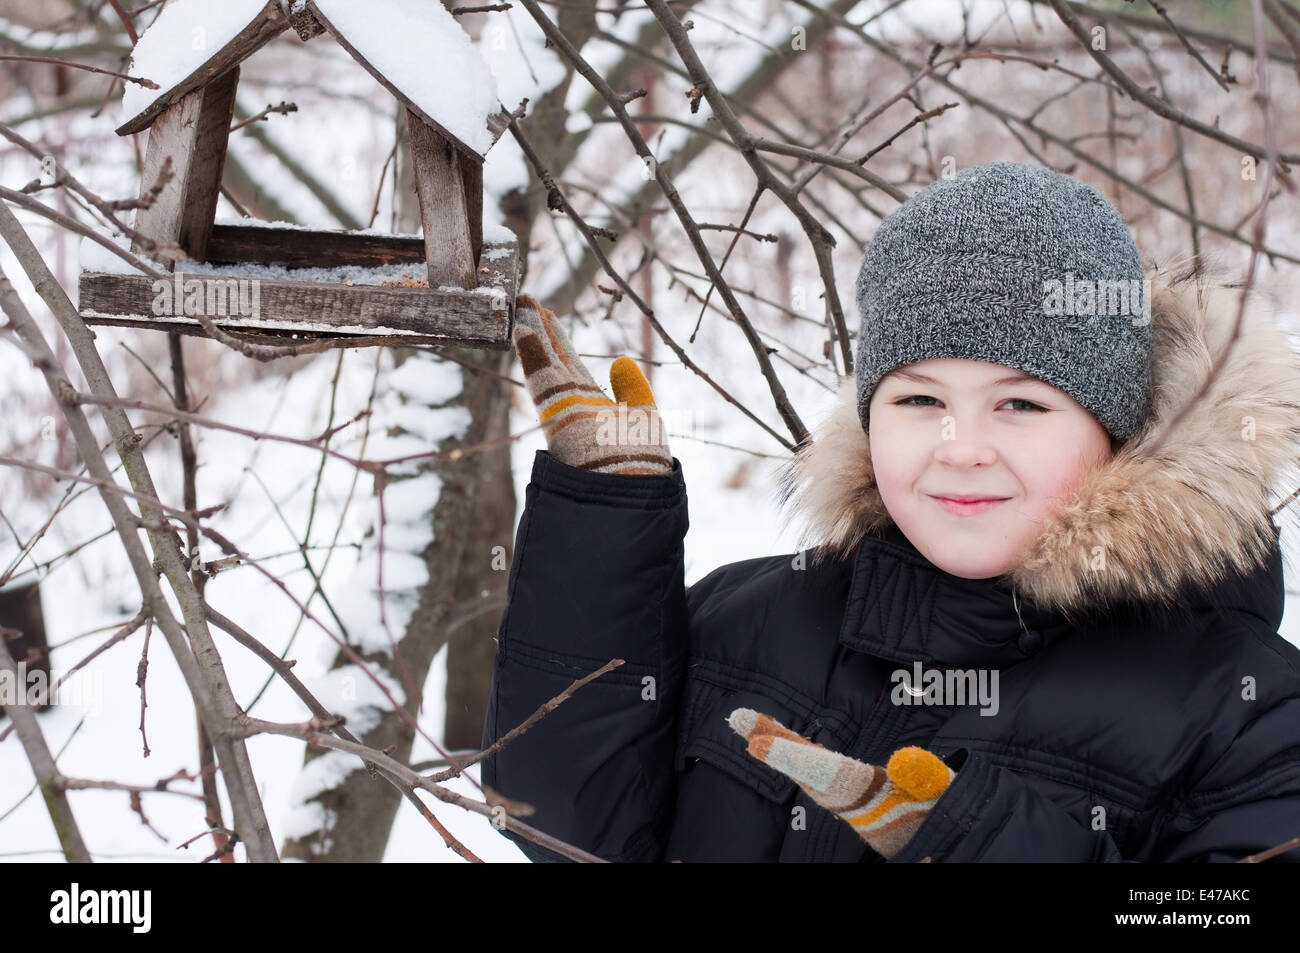 Garçon enfant l'une l'alimentation d'hiver 98 ans neige neige-couvertes jacket hat cap feed chambre jardin parc suspendu en bois bois forêt Russie Banque D'Images